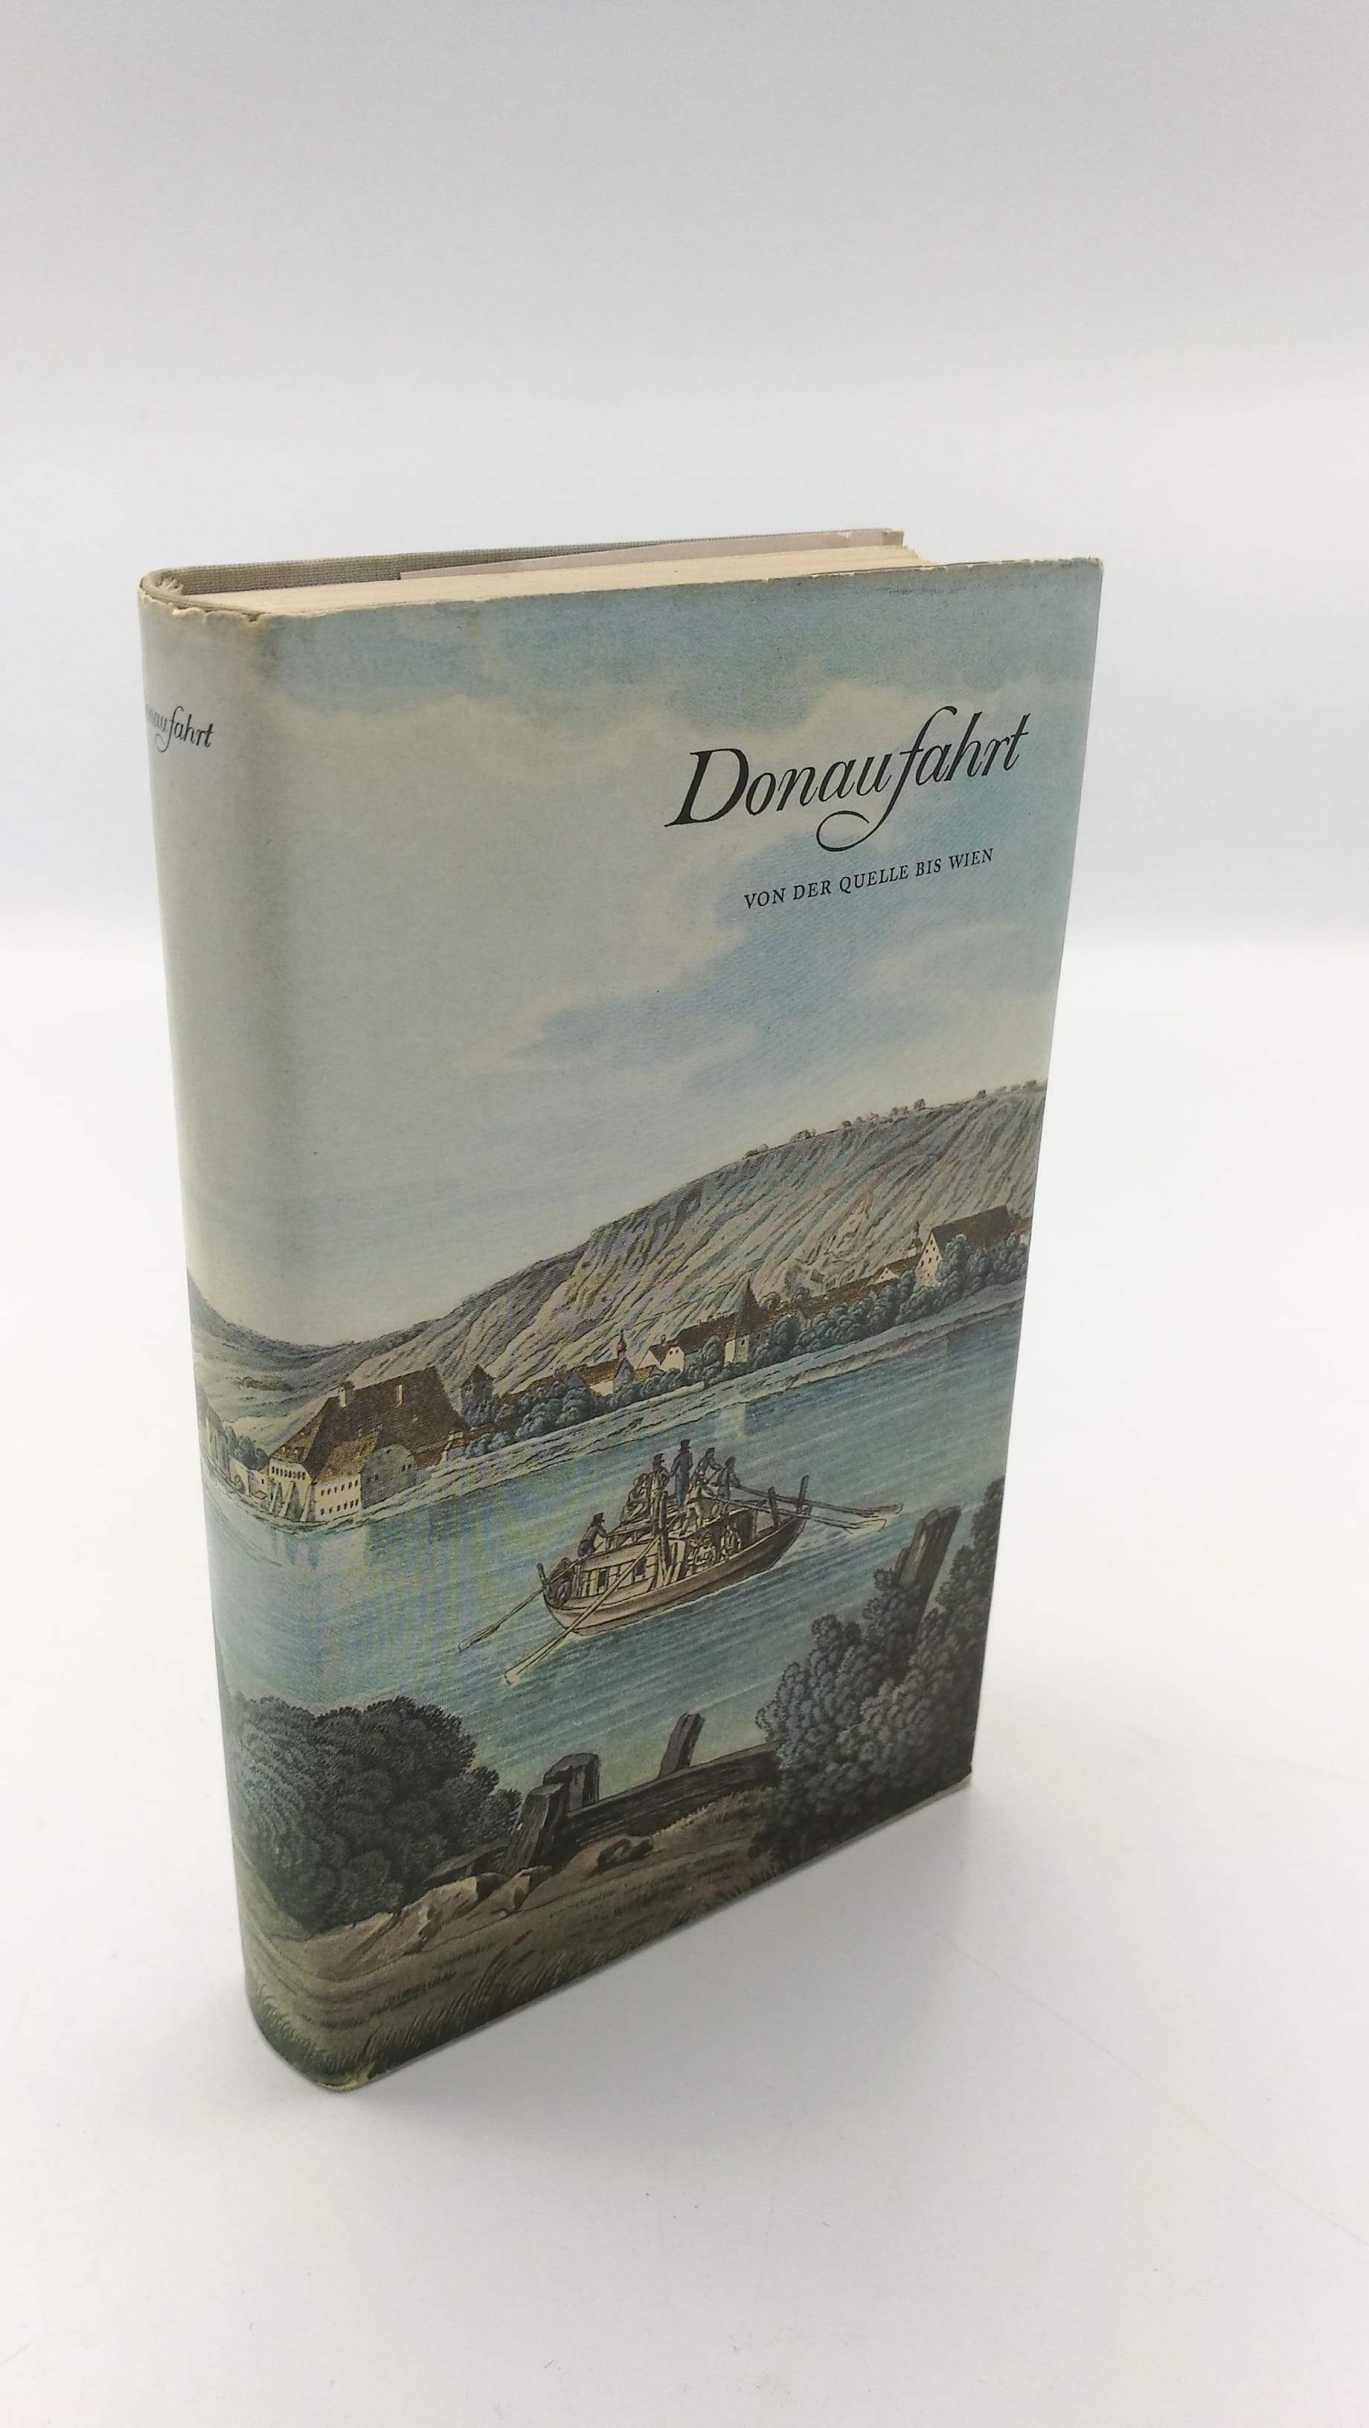 Hasinger (Hrsg.), Hermann: Donaufahrt. Von der Quelle bis Wien 